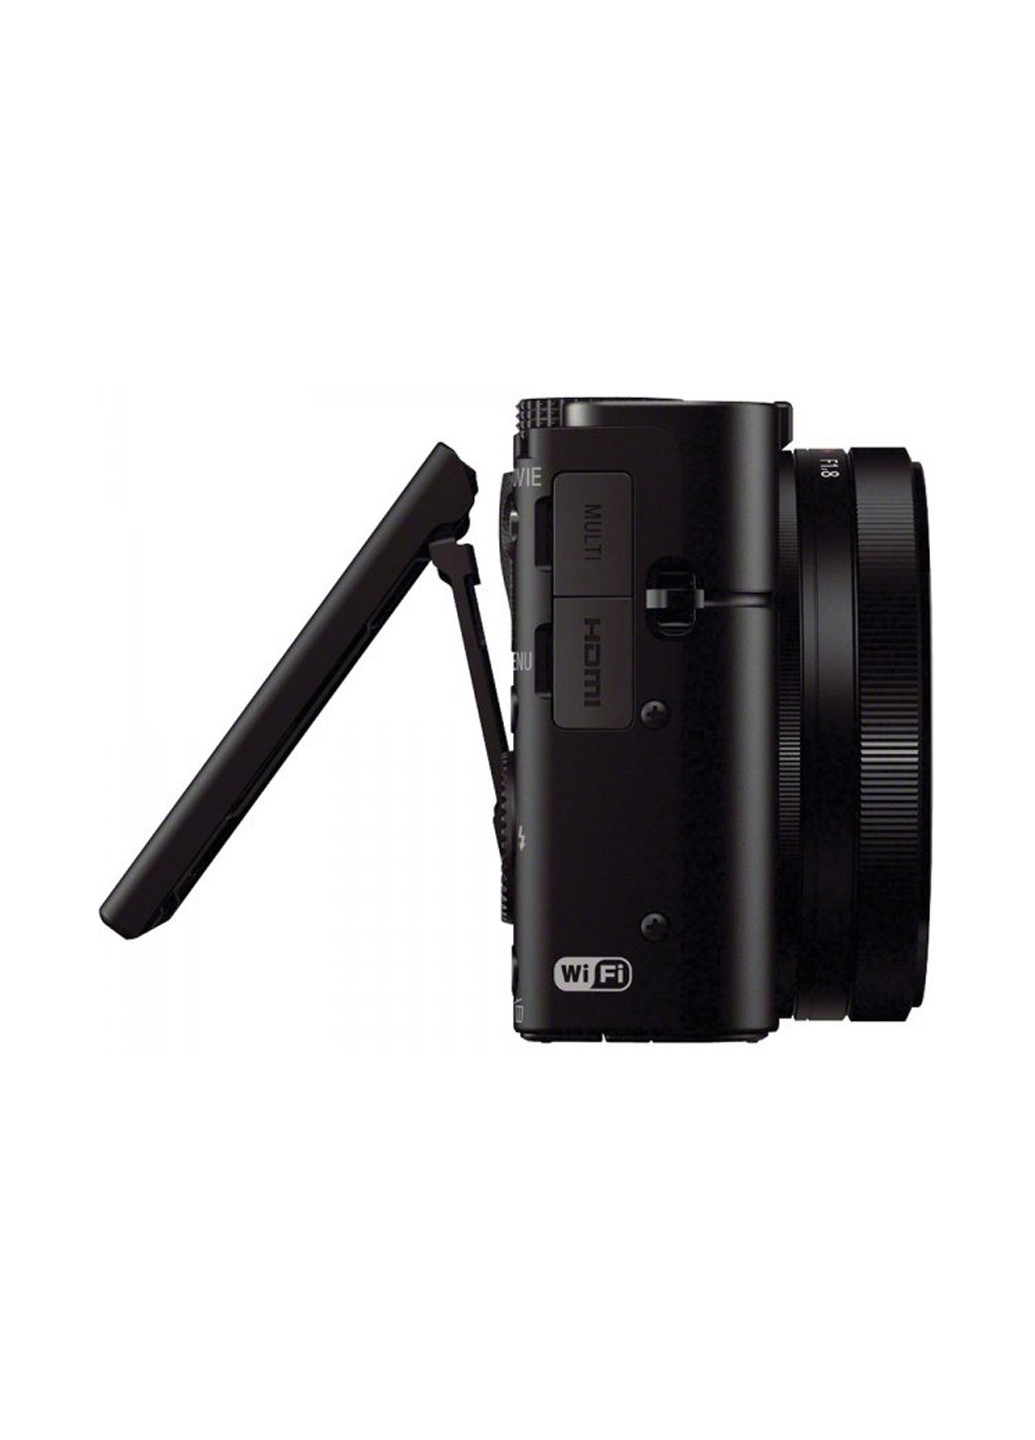 Компактна фотокамера Sony cyber-shot rx100 mkiii (132999712)